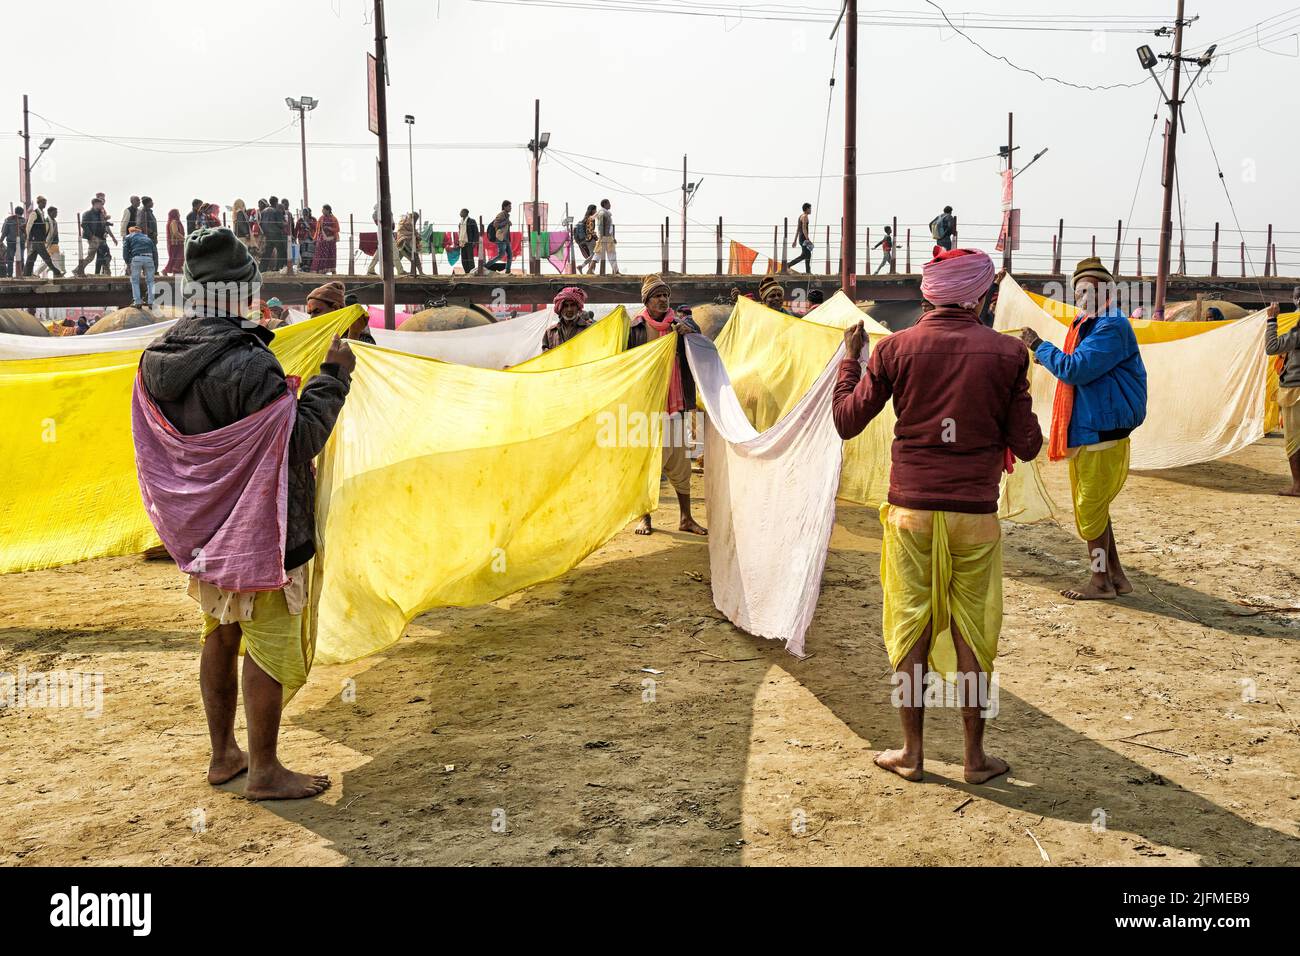 Pilgrims stretching out washing to dry, Allahabad Kumbh Mela, World’s largest religious gathering, Uttar Pradesh, India Stock Photo